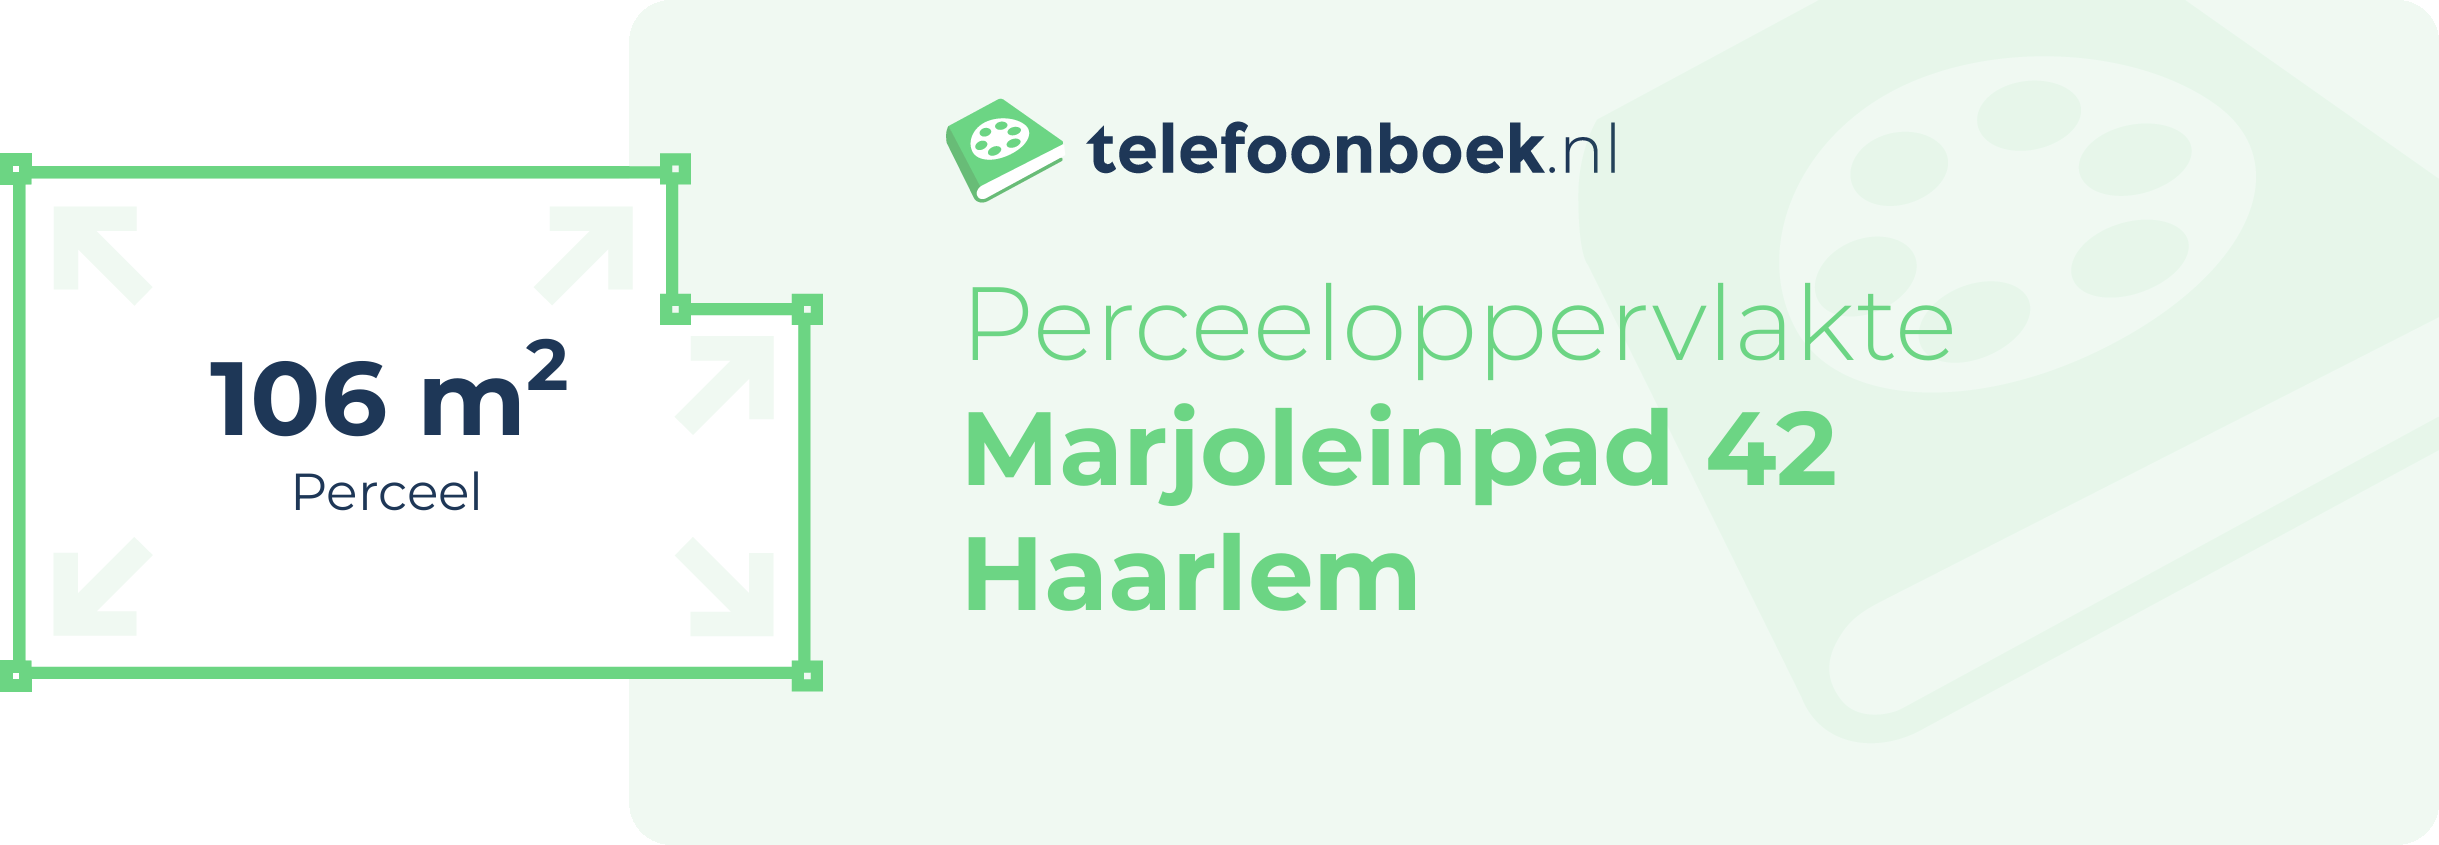 Perceeloppervlakte Marjoleinpad 42 Haarlem